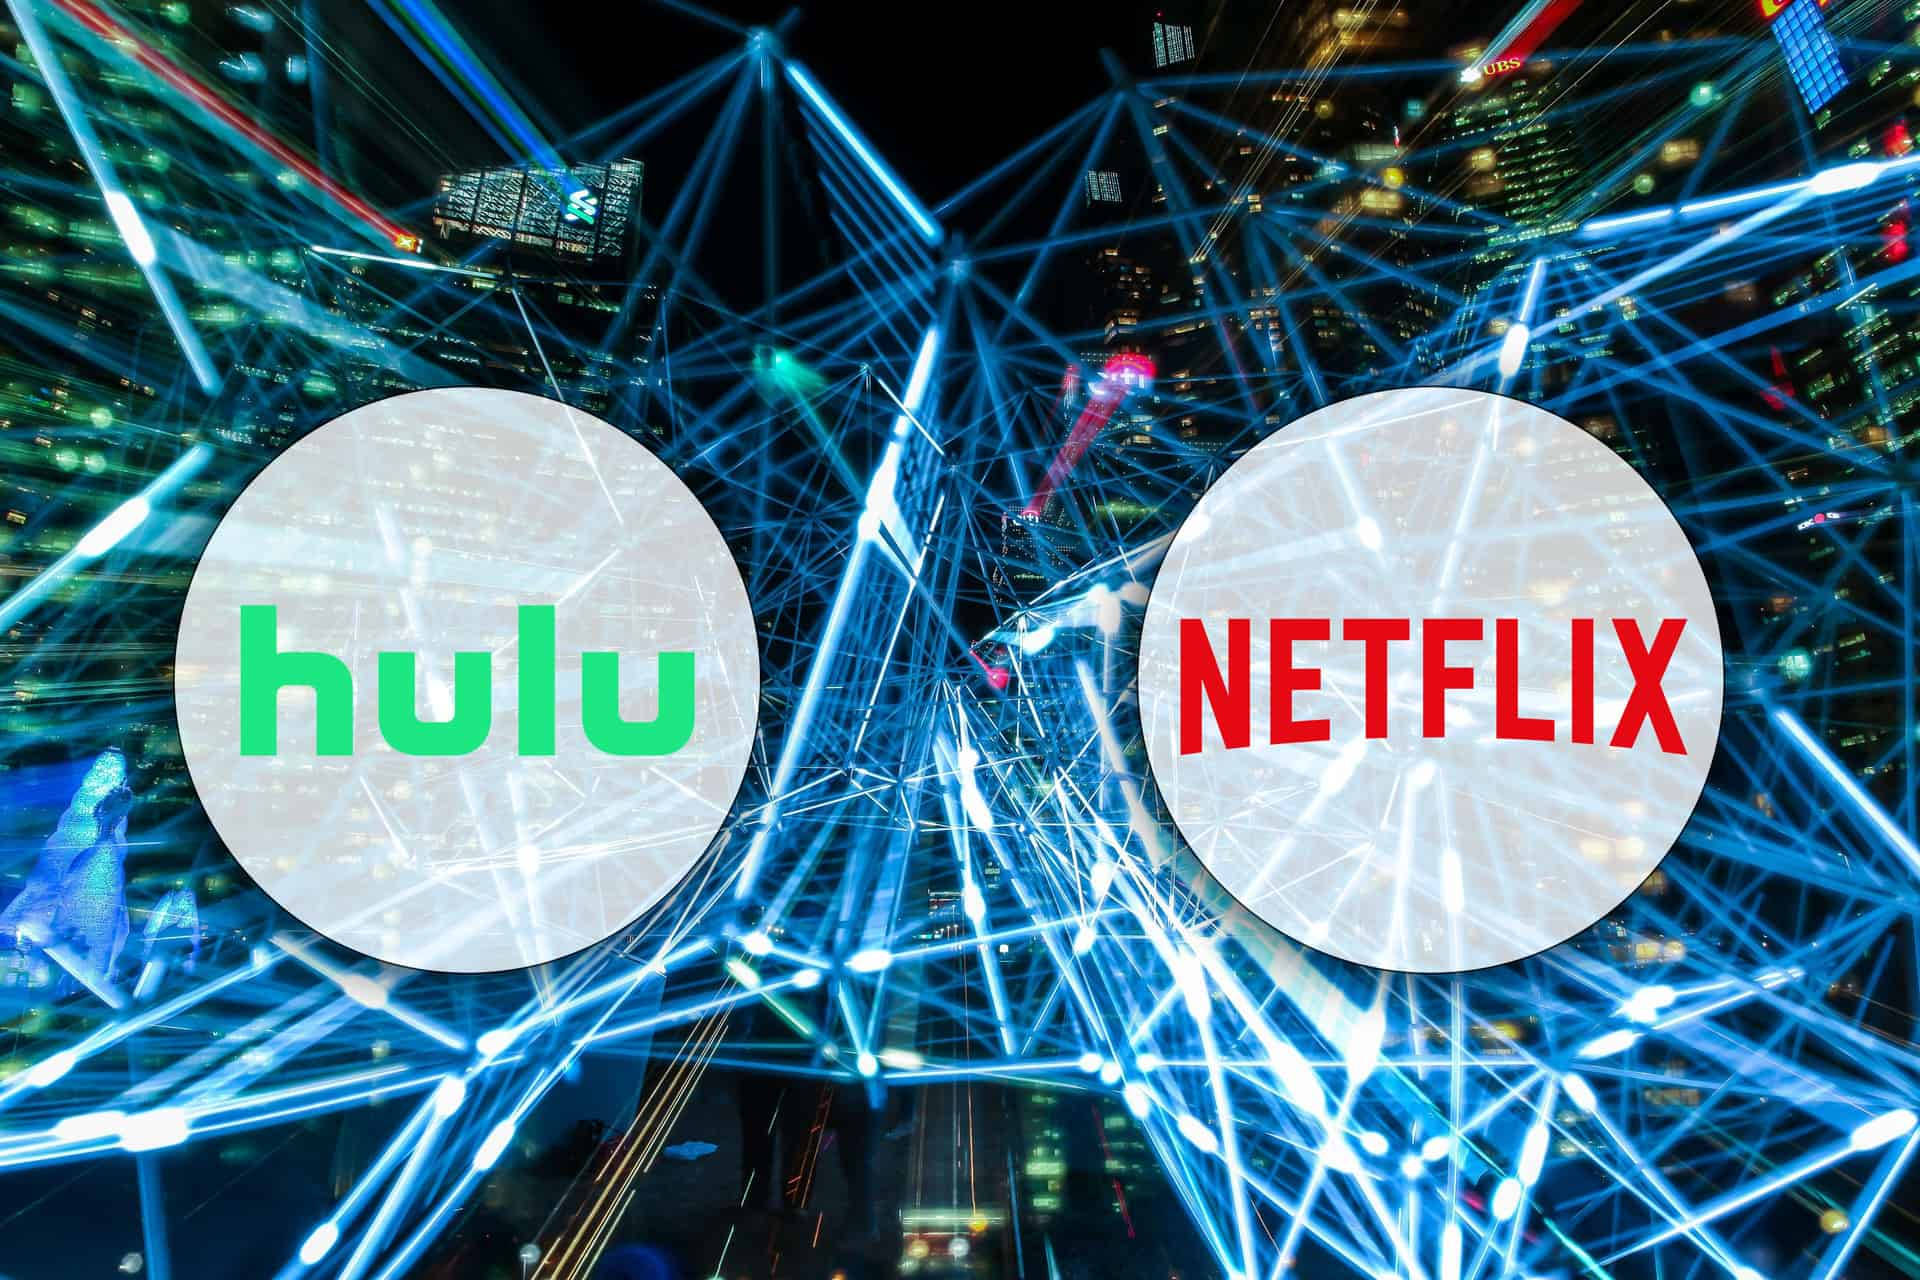 Hulu Vs. Netflix Background